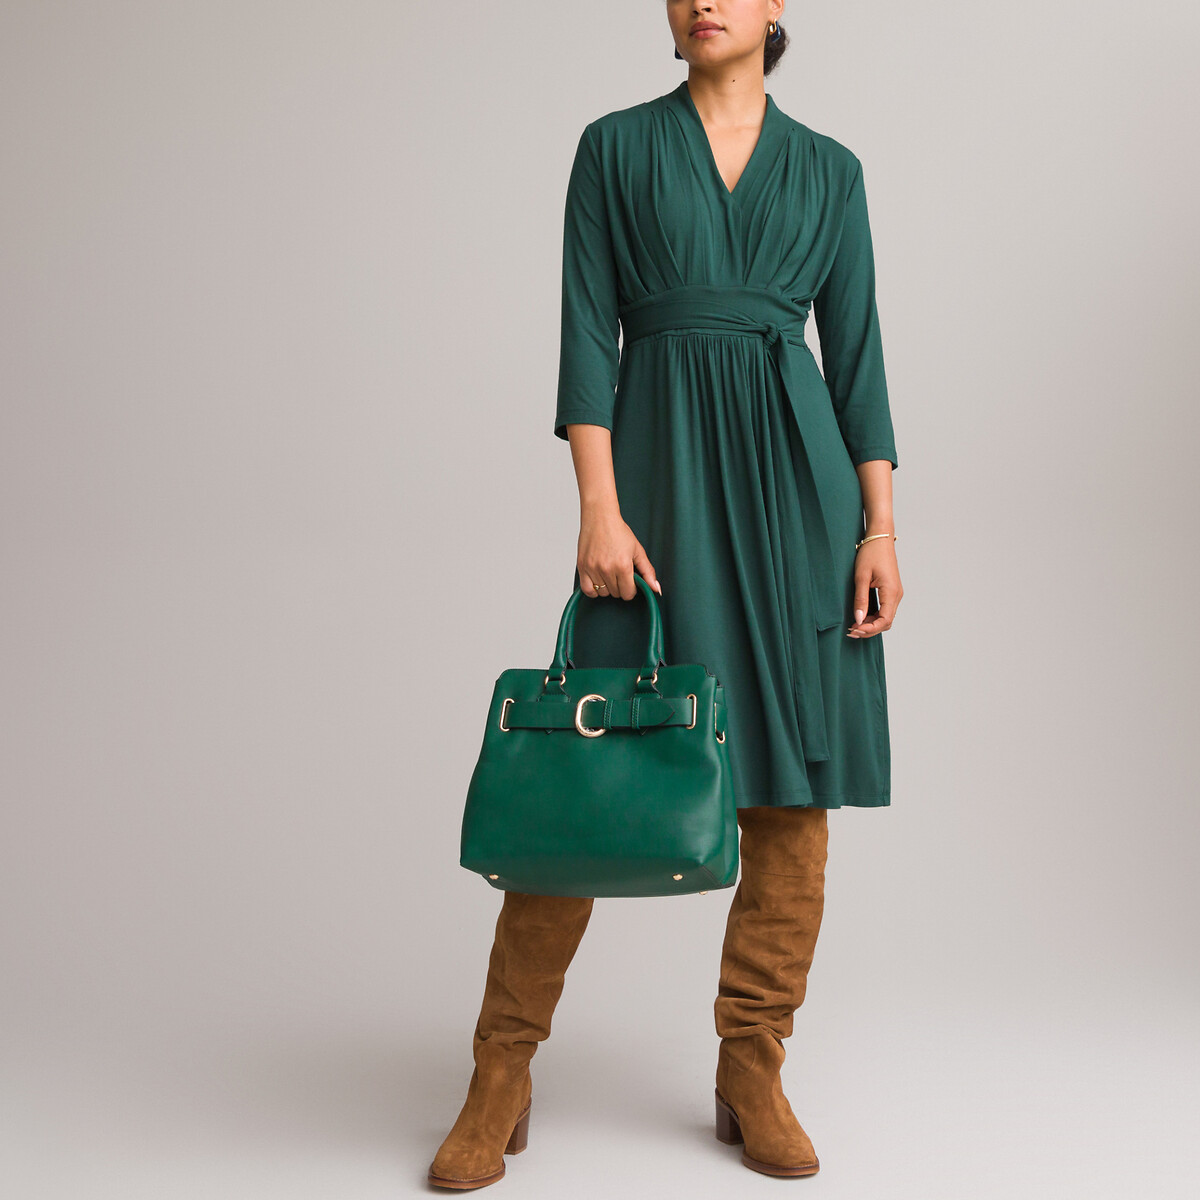 Платье ANNE WEYBURN Платье Расклешенное из струящегося трикотажа с рукавами 34 42 зеленый, размер 42 - фото 1